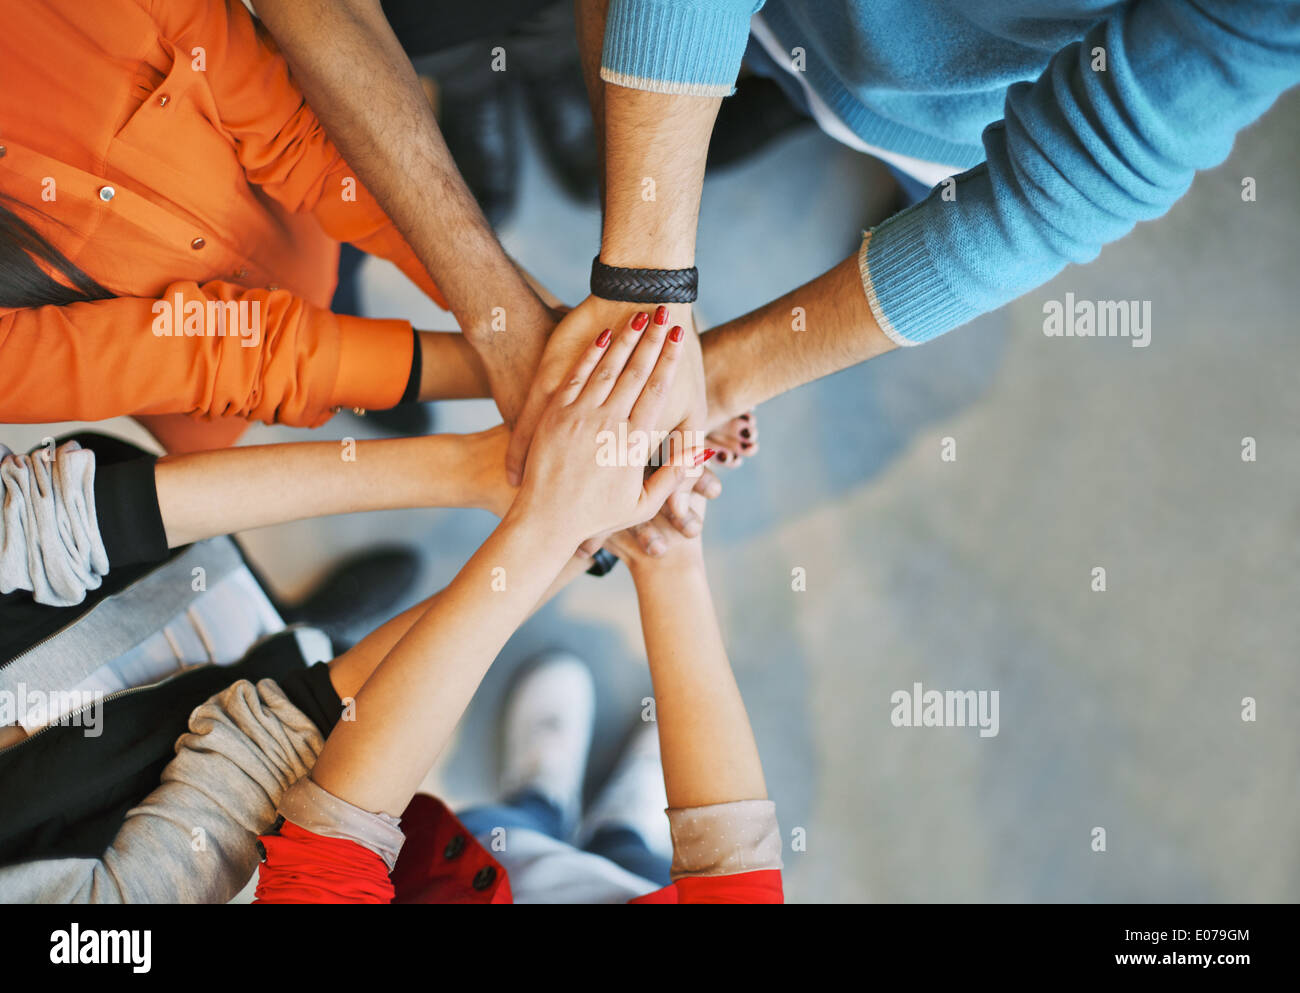 Top visualizza immagine di un gruppo di giovani di mettere le loro mani insieme. Gli amici con la pila di mani che mostra l'unità. Foto Stock